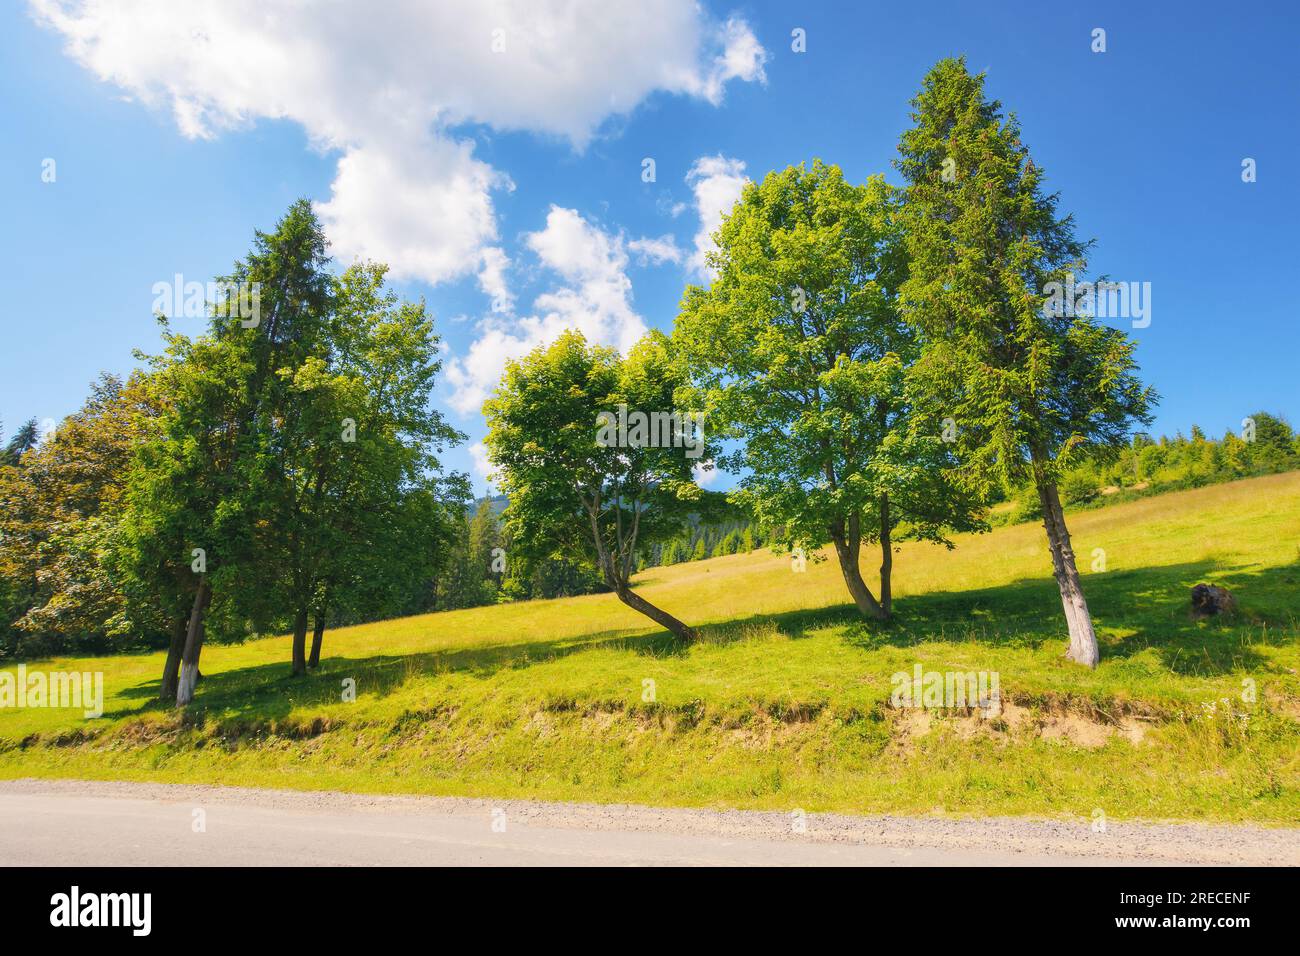 Friedliche Sommerlandschaft, umgeben von grünen Hügeln. Die Straße verläuft durch die ländliche Landschaft. Malerischer Blick auf den friedlichen karpaten-Morgen Stockfoto